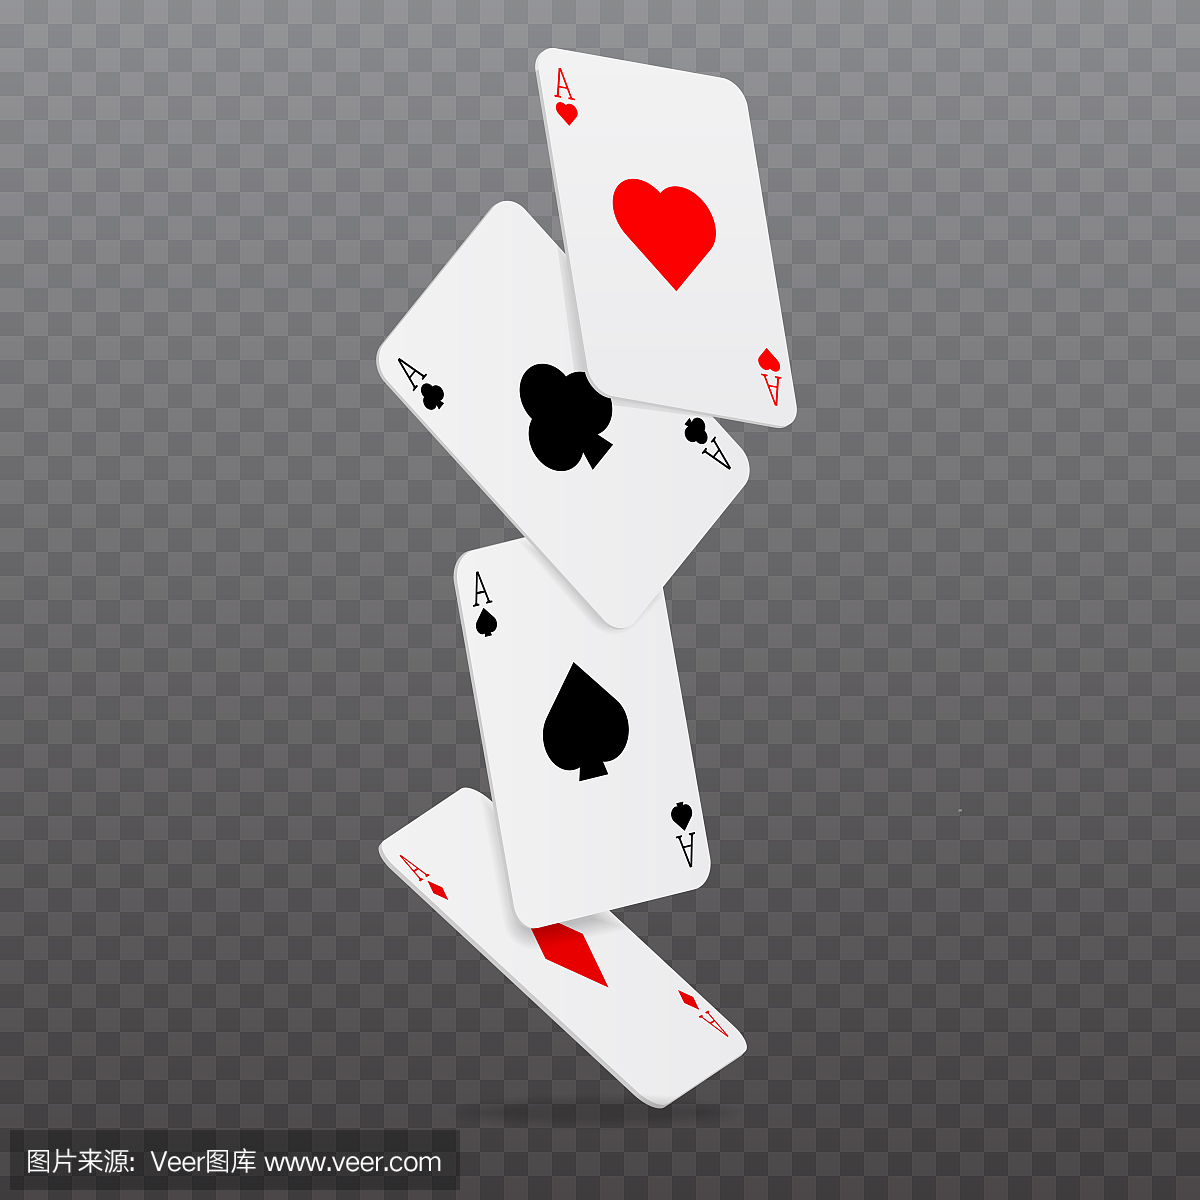 赌场下降扑克牌游戏概念。矢量图。